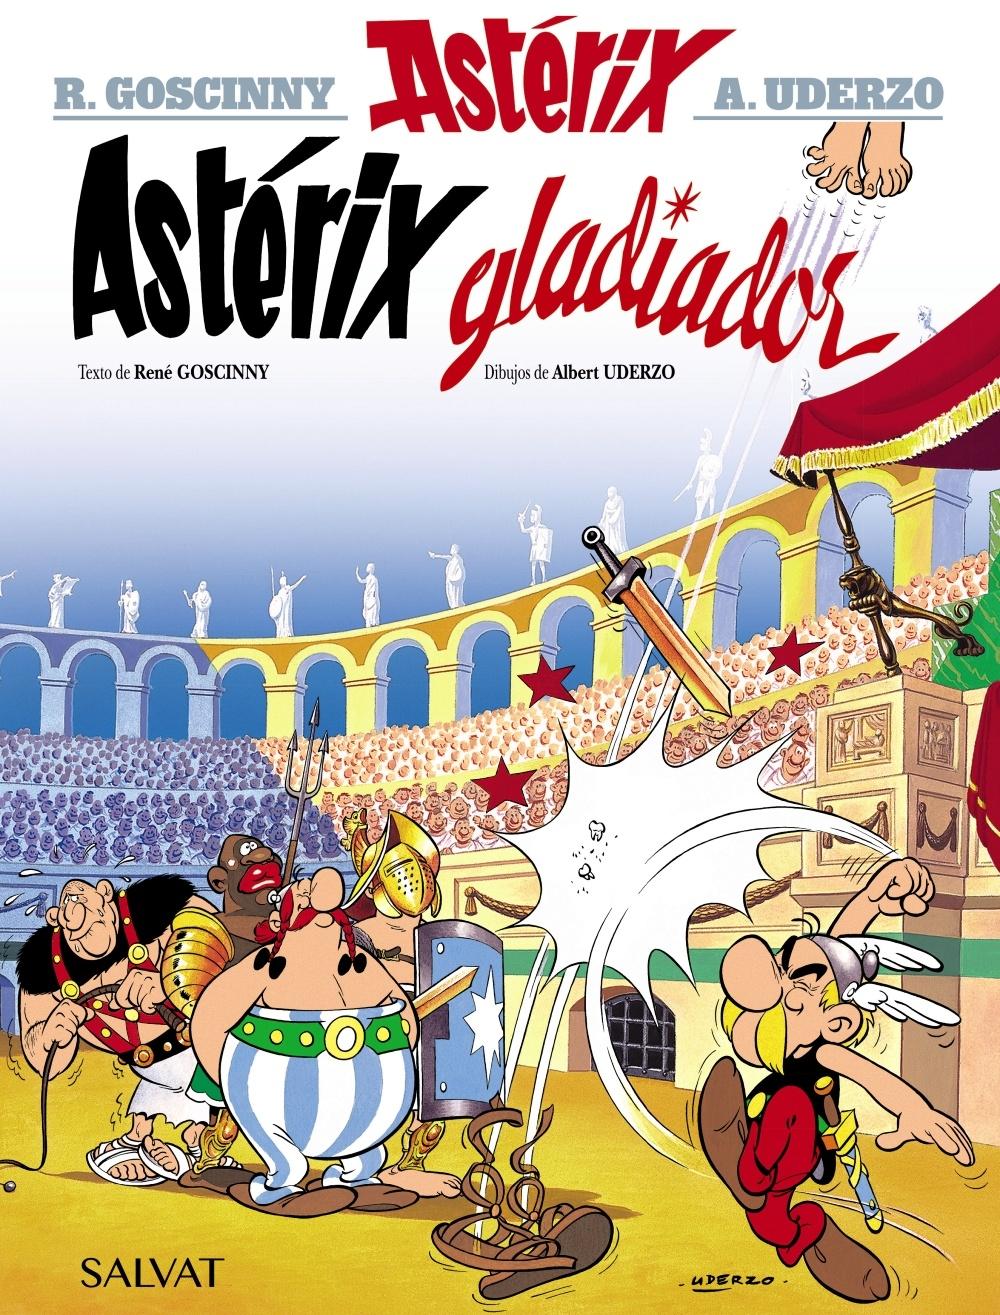 Astérix Gladiador "Astérix 4". 